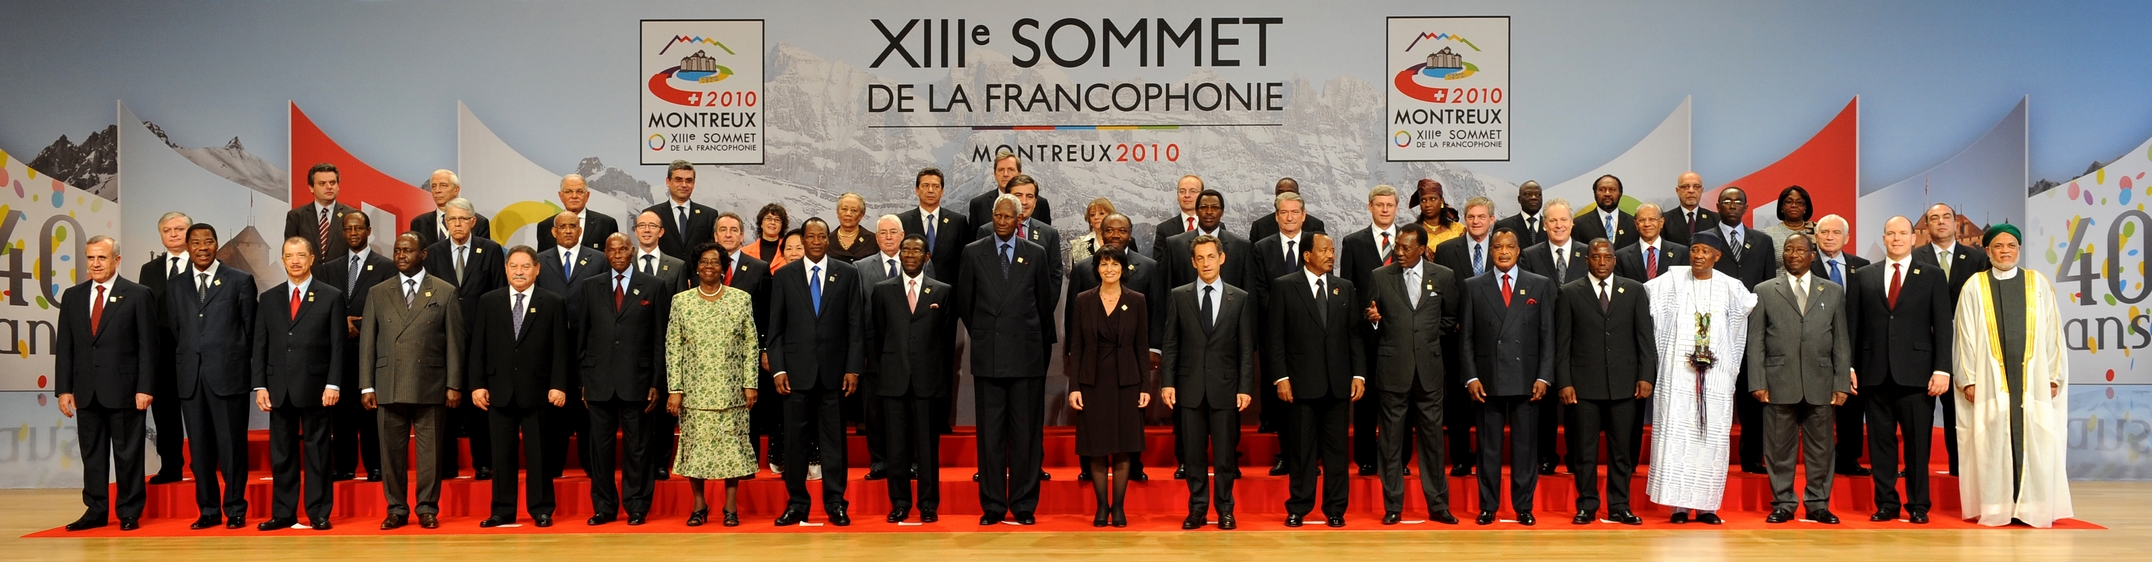 Photo de famille: XIIIe (13e) Sommet de la Francophonie  Montreux (Suisse), 23-24 Octobre 2010